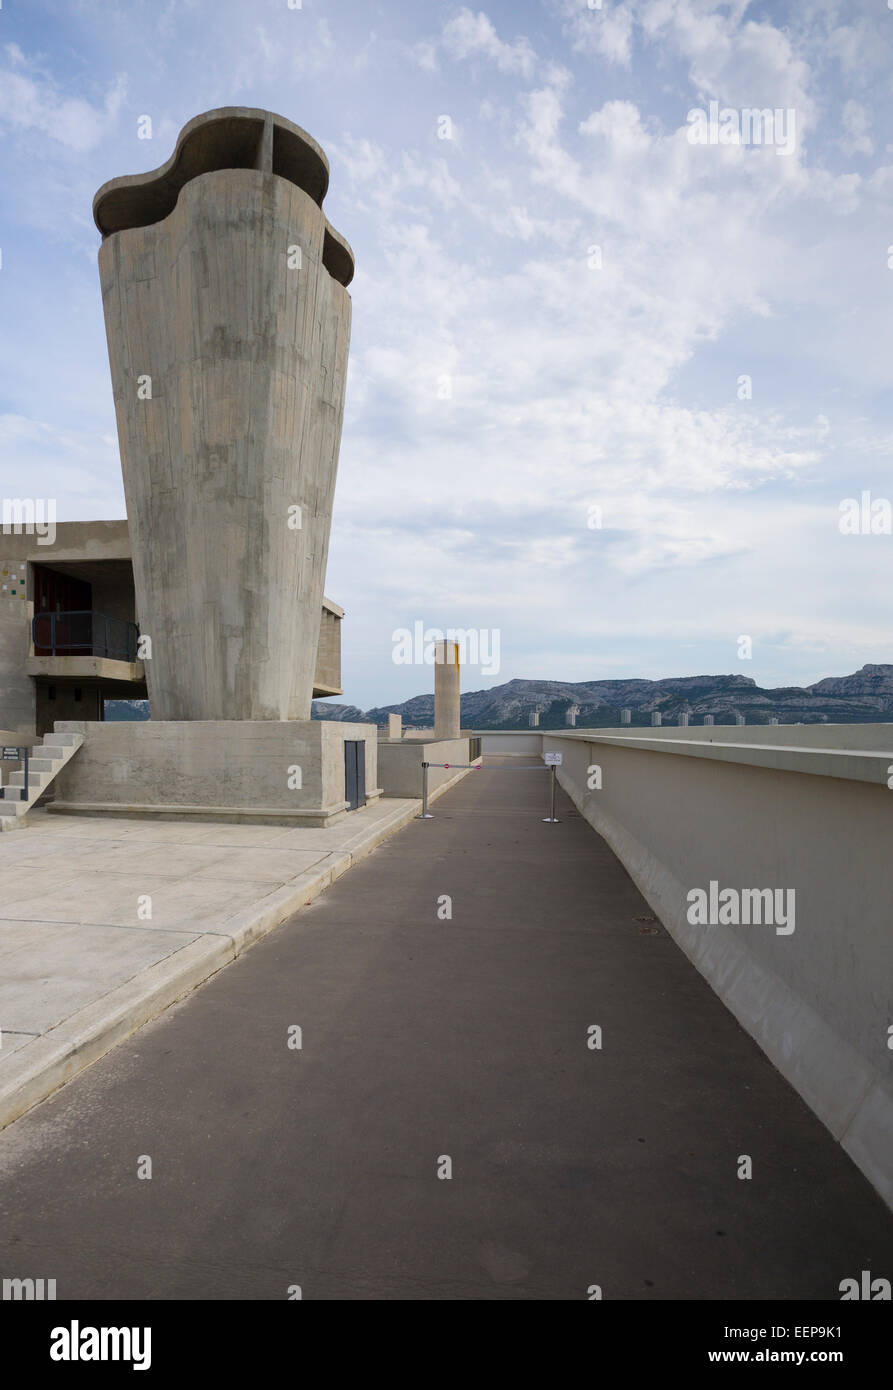 L'arbre de Ventilation de toit de l'Unité d'habitation Le Corbusier Marseille France Banque D'Images